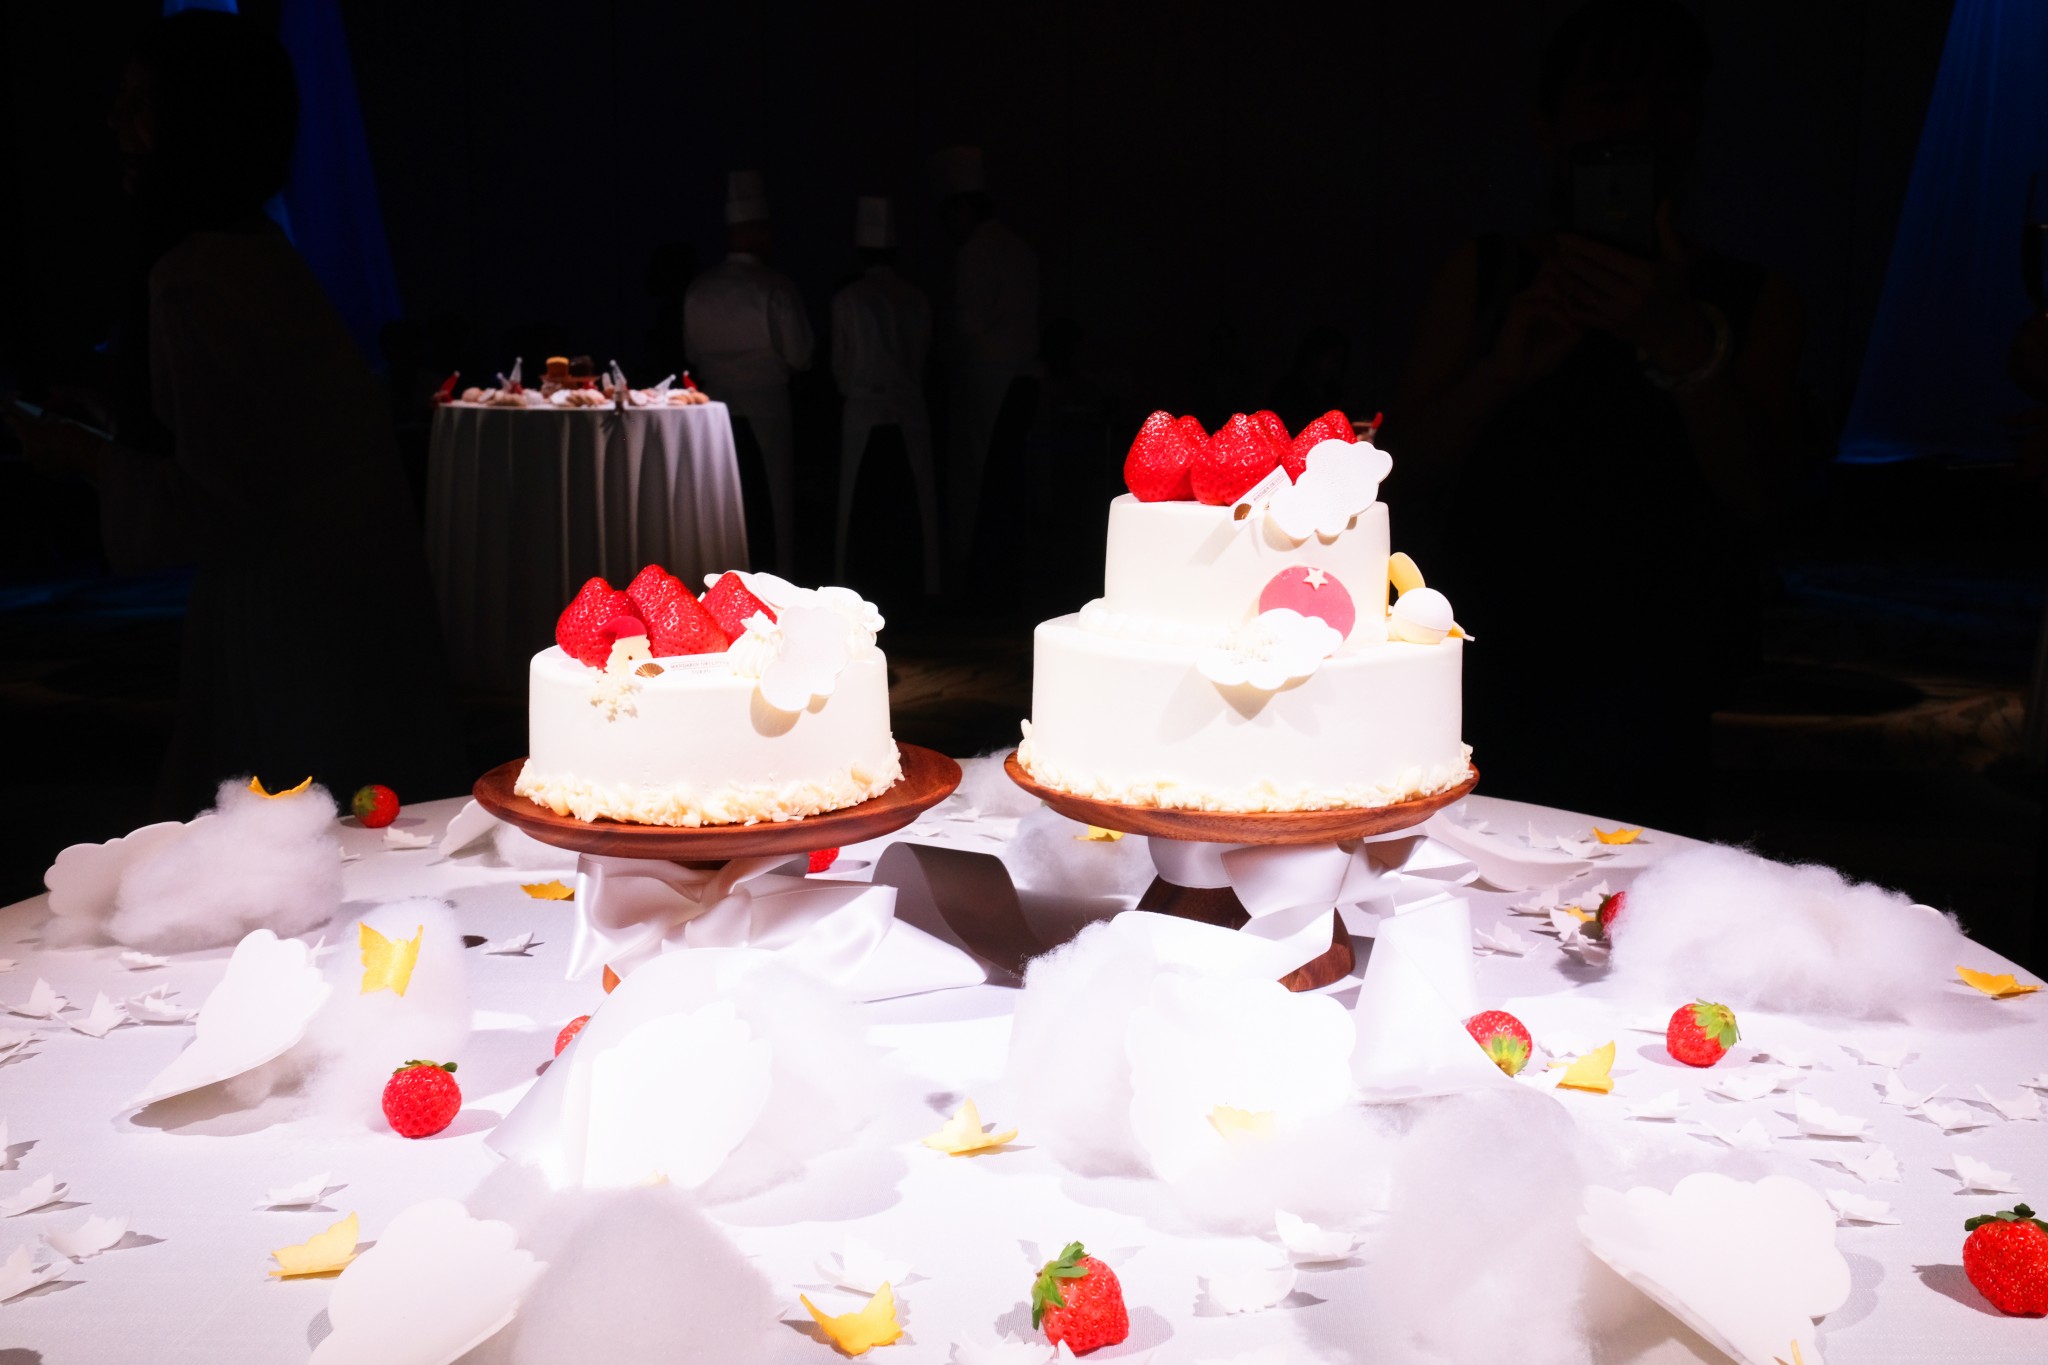 左：「苺のショートケーキ」6,000円、右：「千疋屋クイーンストロベリー プレミアムショートケーキ」22,000円（50個限定）。